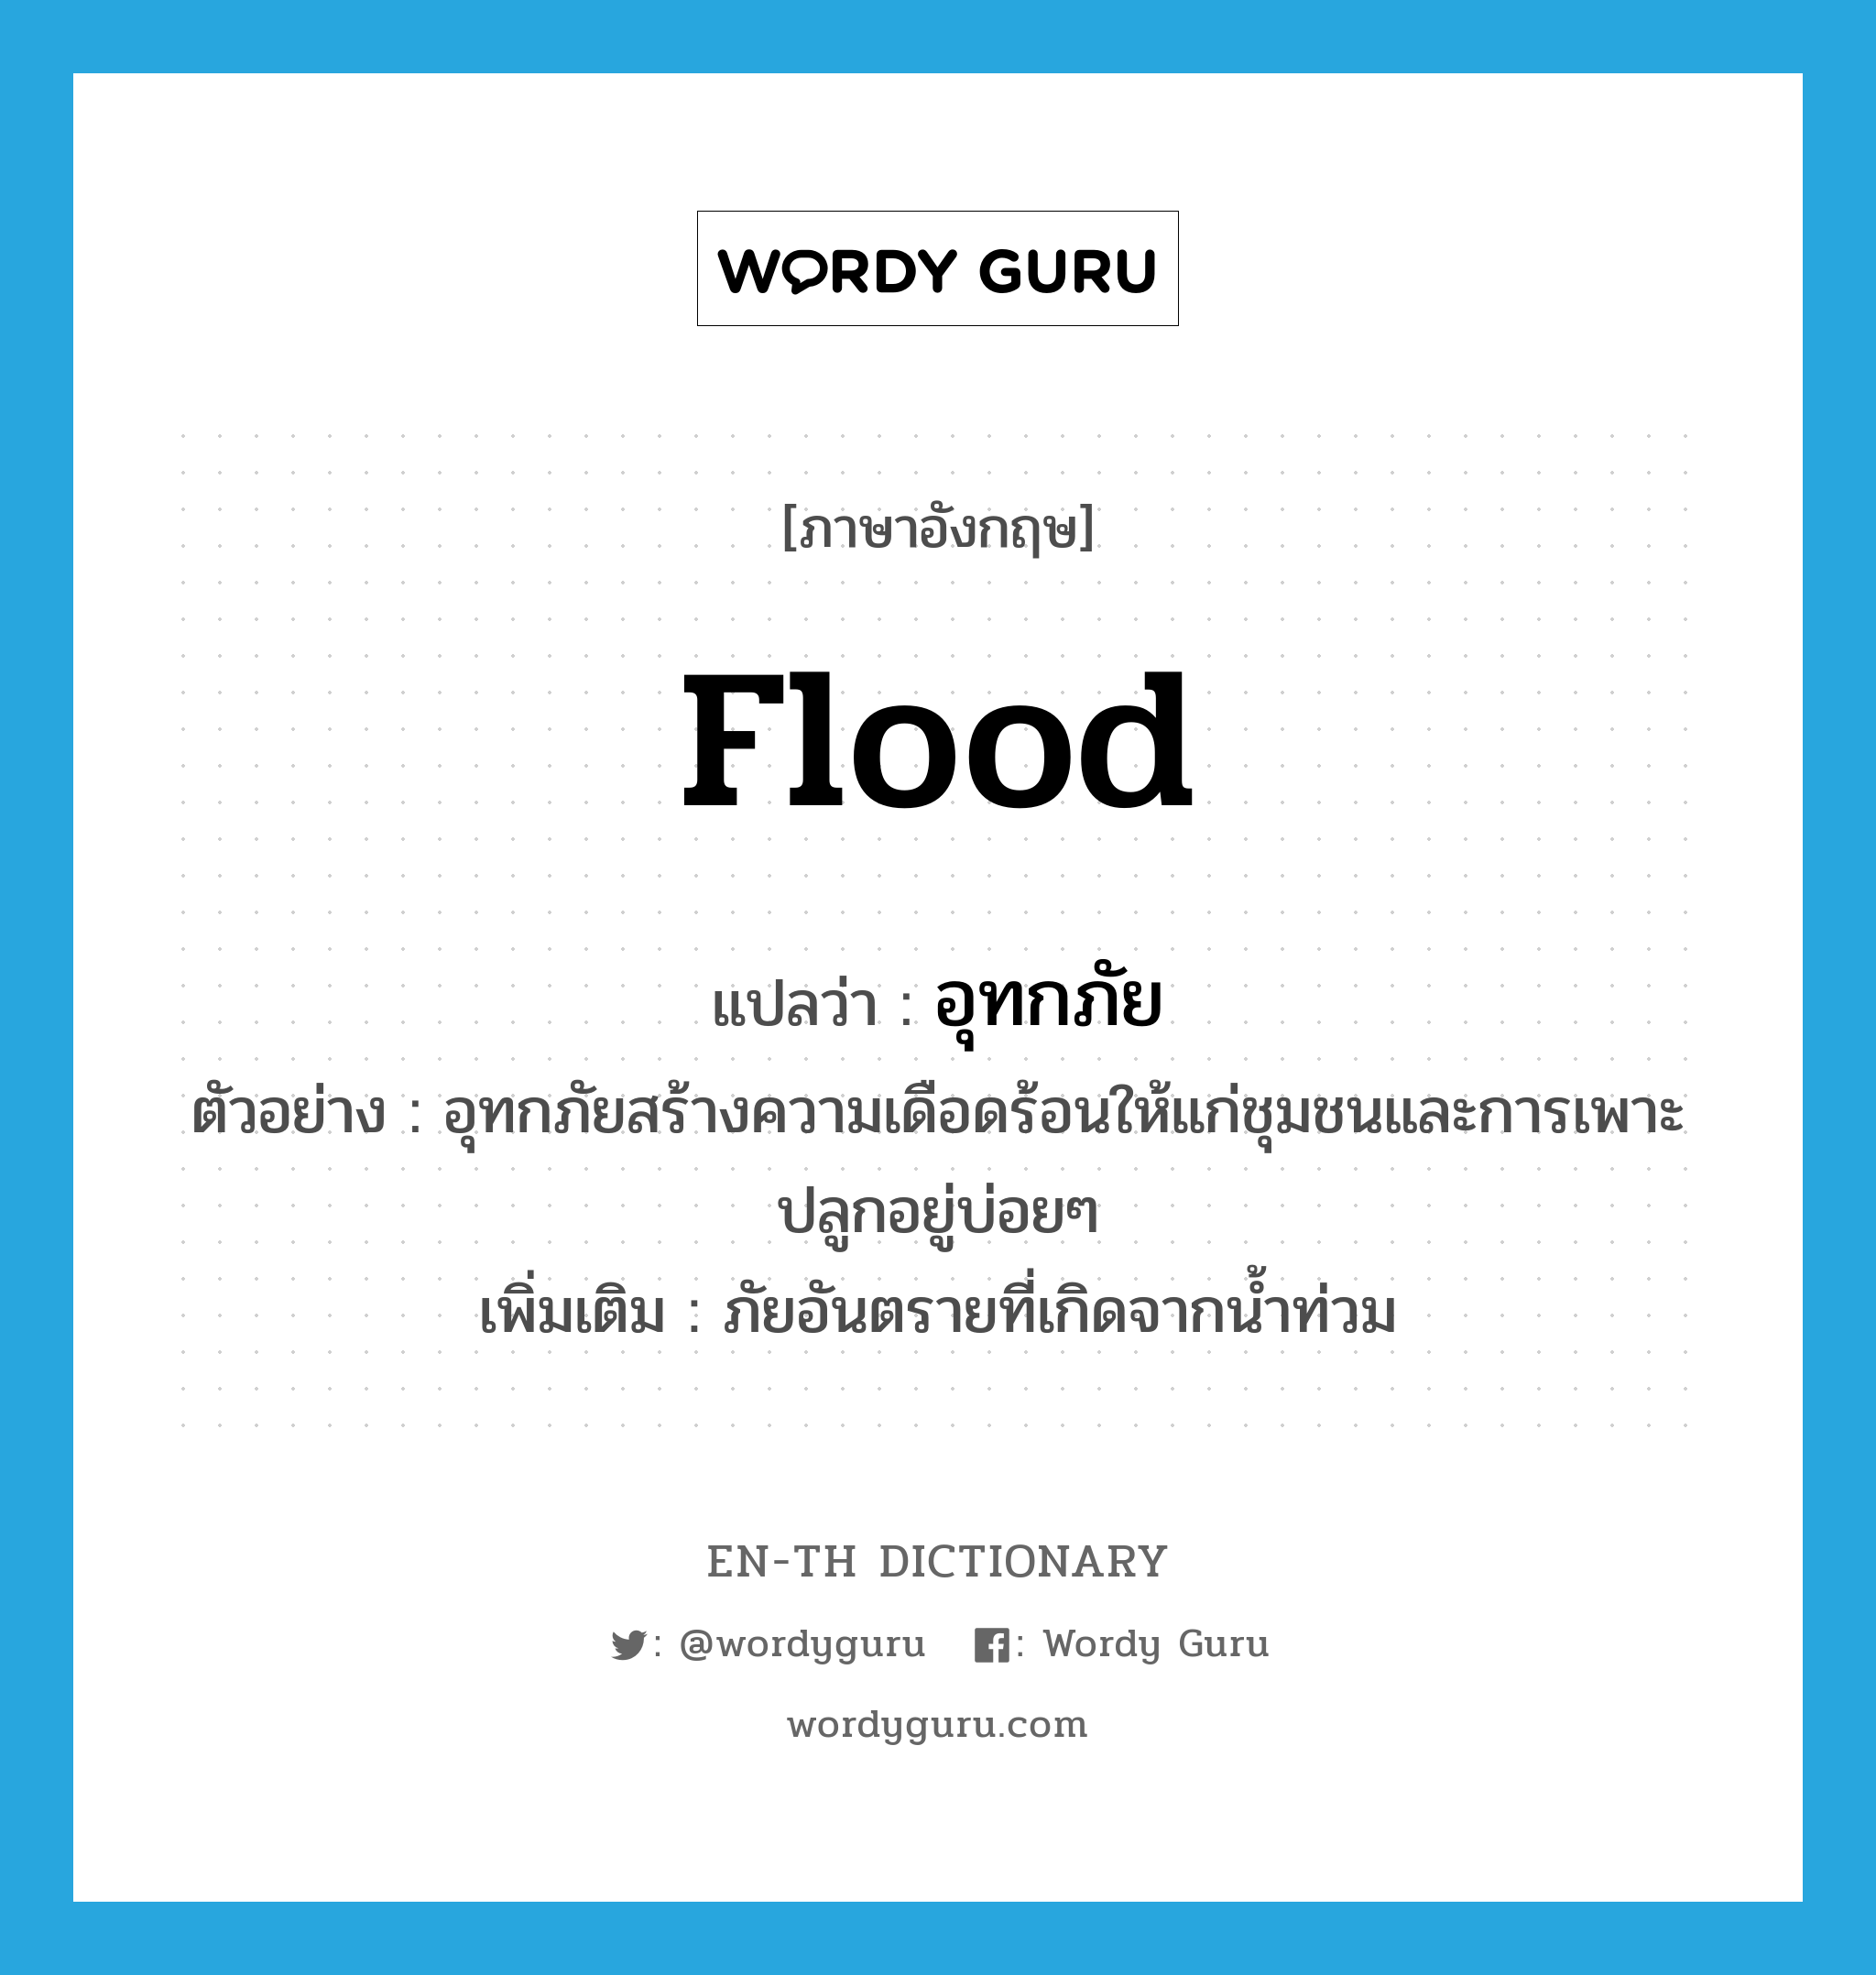 flood แปลว่า?, คำศัพท์ภาษาอังกฤษ flood แปลว่า อุทกภัย ประเภท N ตัวอย่าง อุทกภัยสร้างความเดือดร้อนให้แก่ชุมชนและการเพาะปลูกอยู่บ่อยๆ เพิ่มเติม ภัยอันตรายที่เกิดจากน้ำท่วม หมวด N